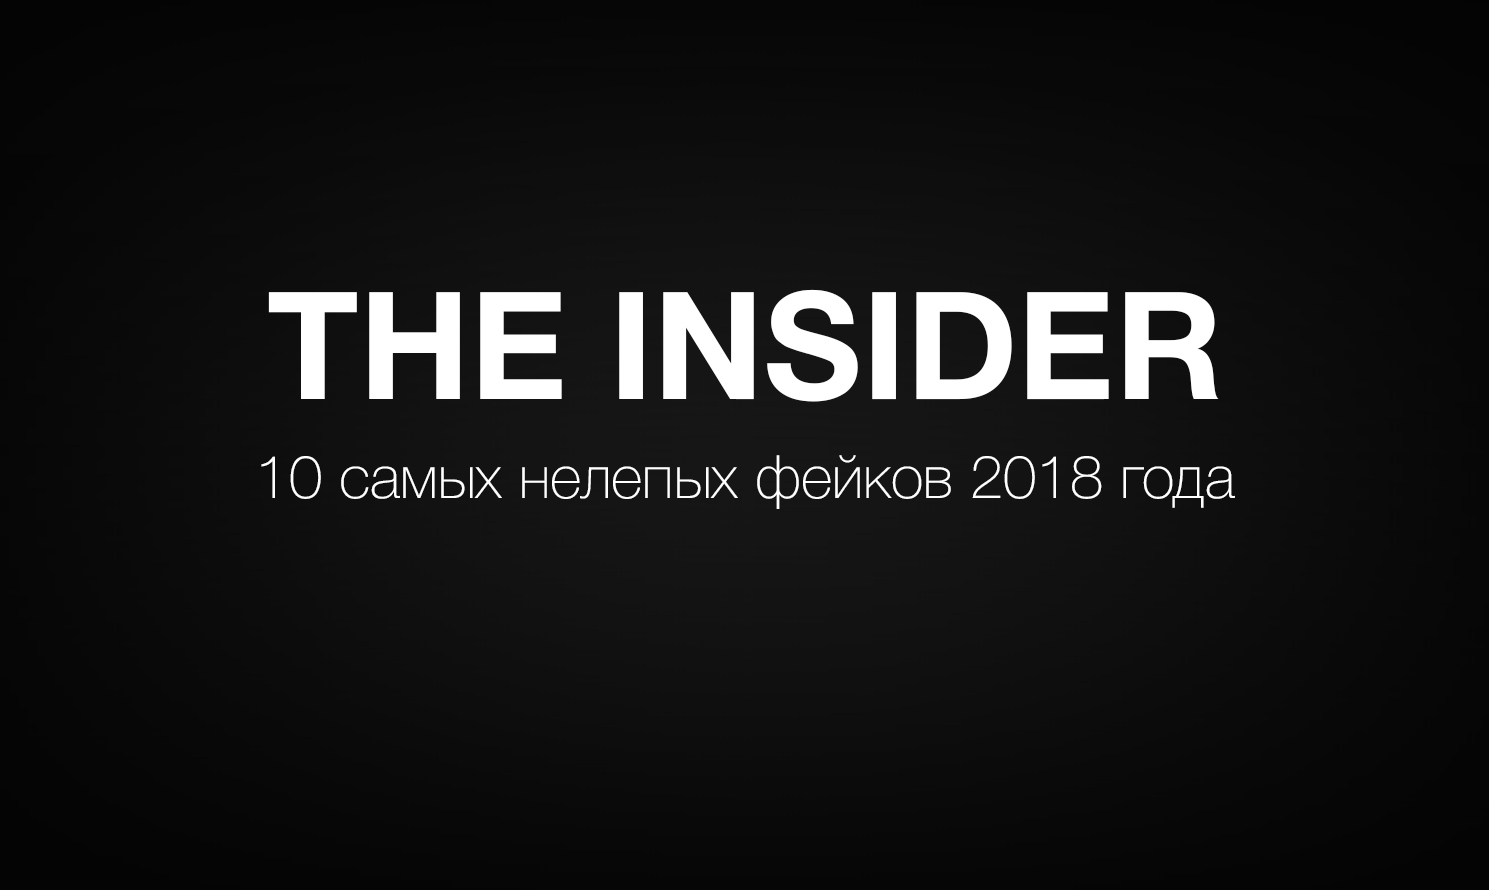 Инсайдер расследования. The Insider издание. Insider. Инсайдер СМИ. Инсайдер логотип.